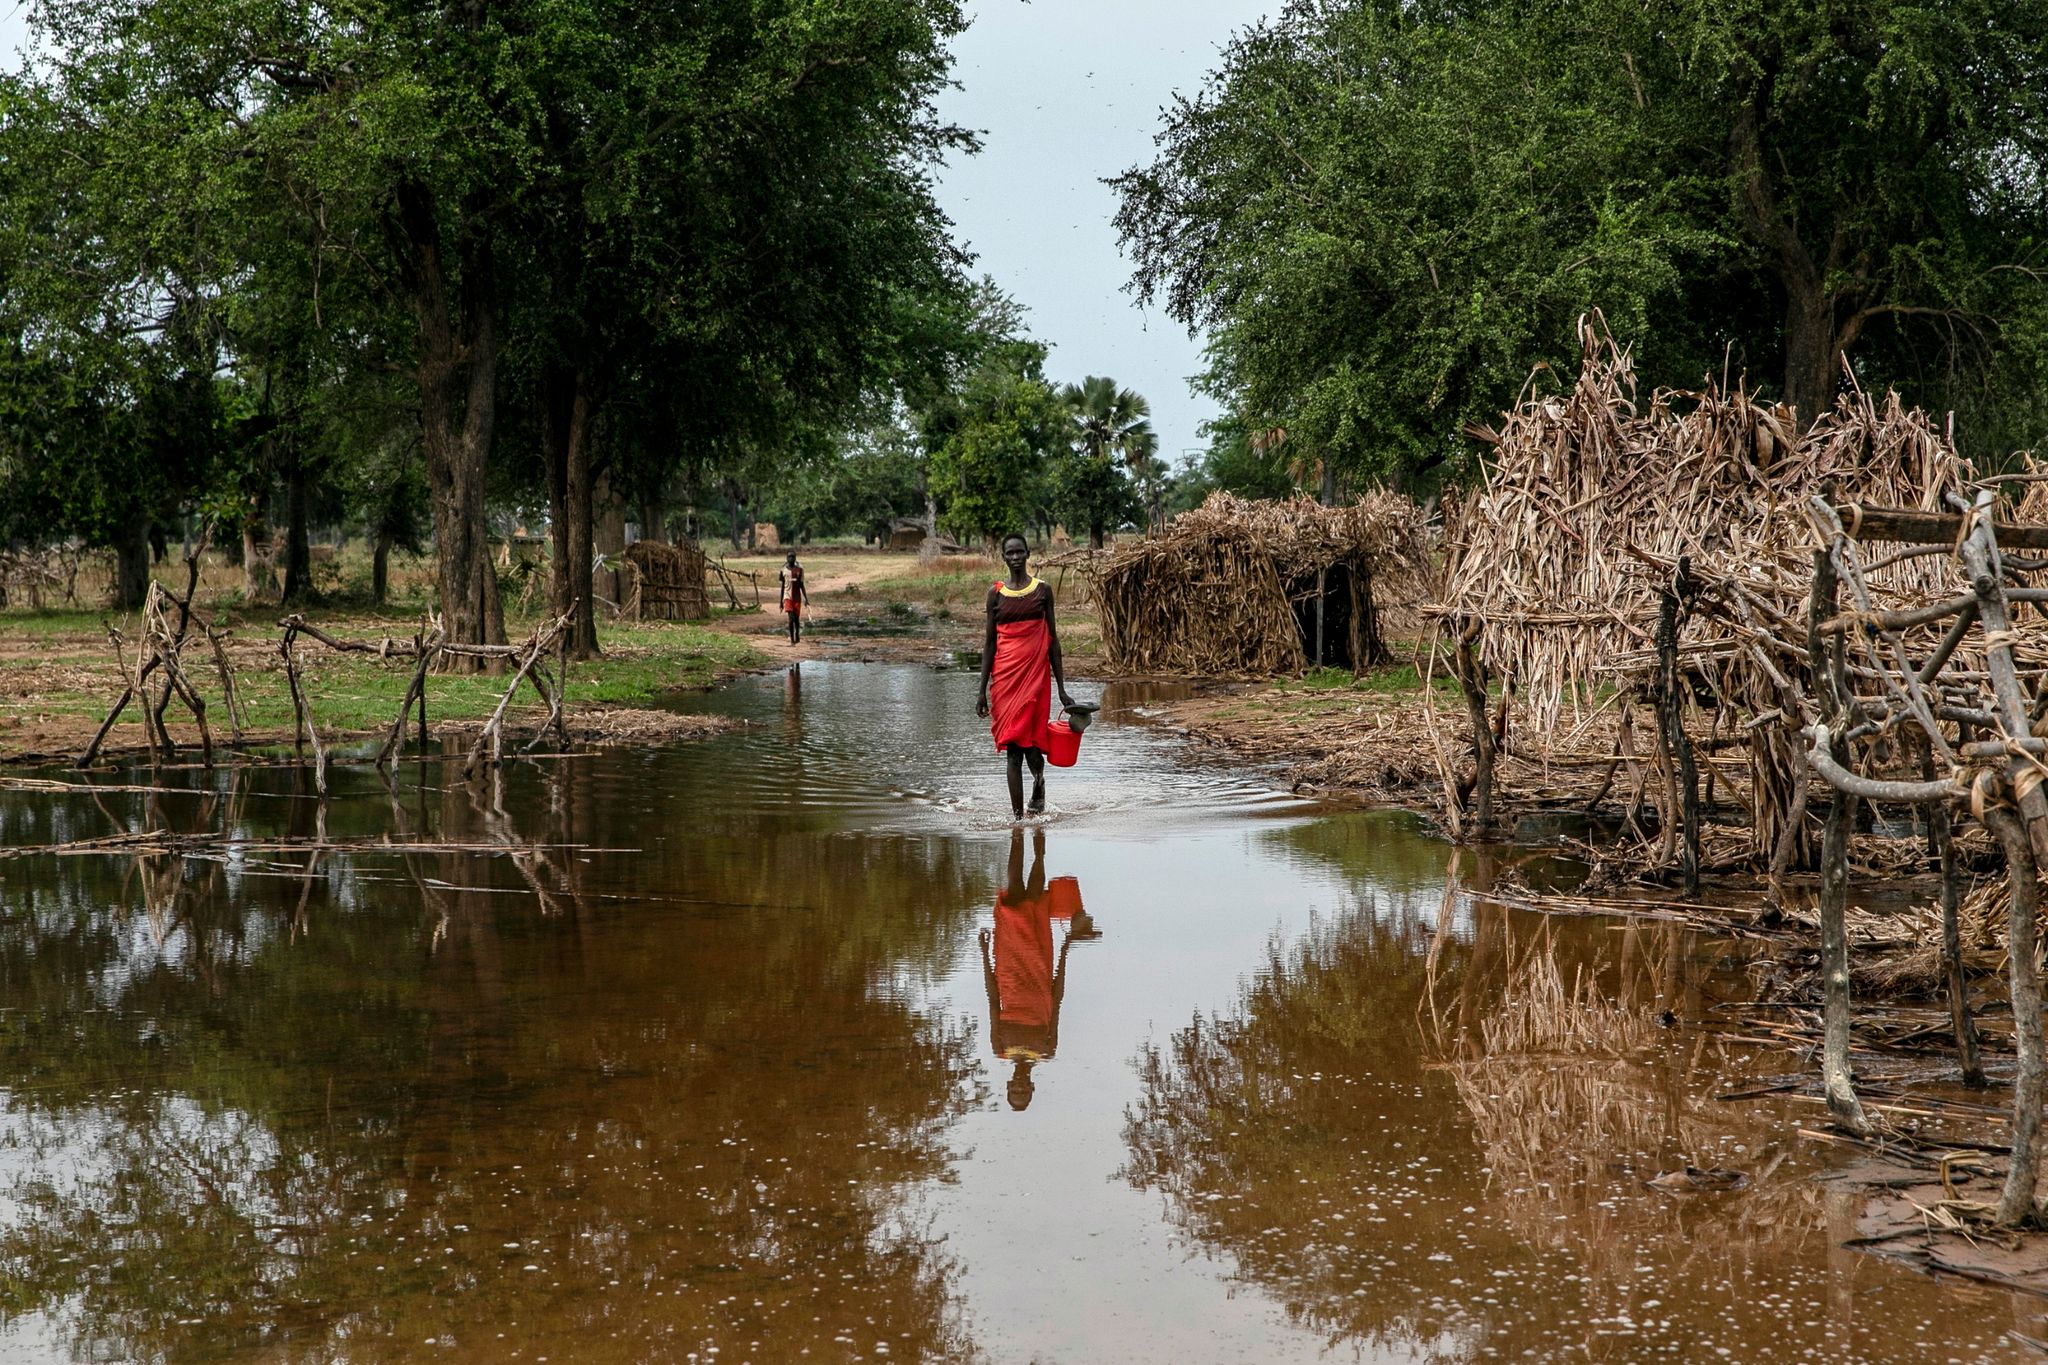 Eine Frau watet durch das Hochwasser zwischen verlassenen Unterkünften im Dorf Majak Awar im Südsudan. Dort sind ganze Bundesstaaten überflutet. Sieben der zehn Klimakrisenherde, die die Nichtregierungsorganisation Oxfam in einer aktuellen Studie identifiziert hat, liegen in Afrika.